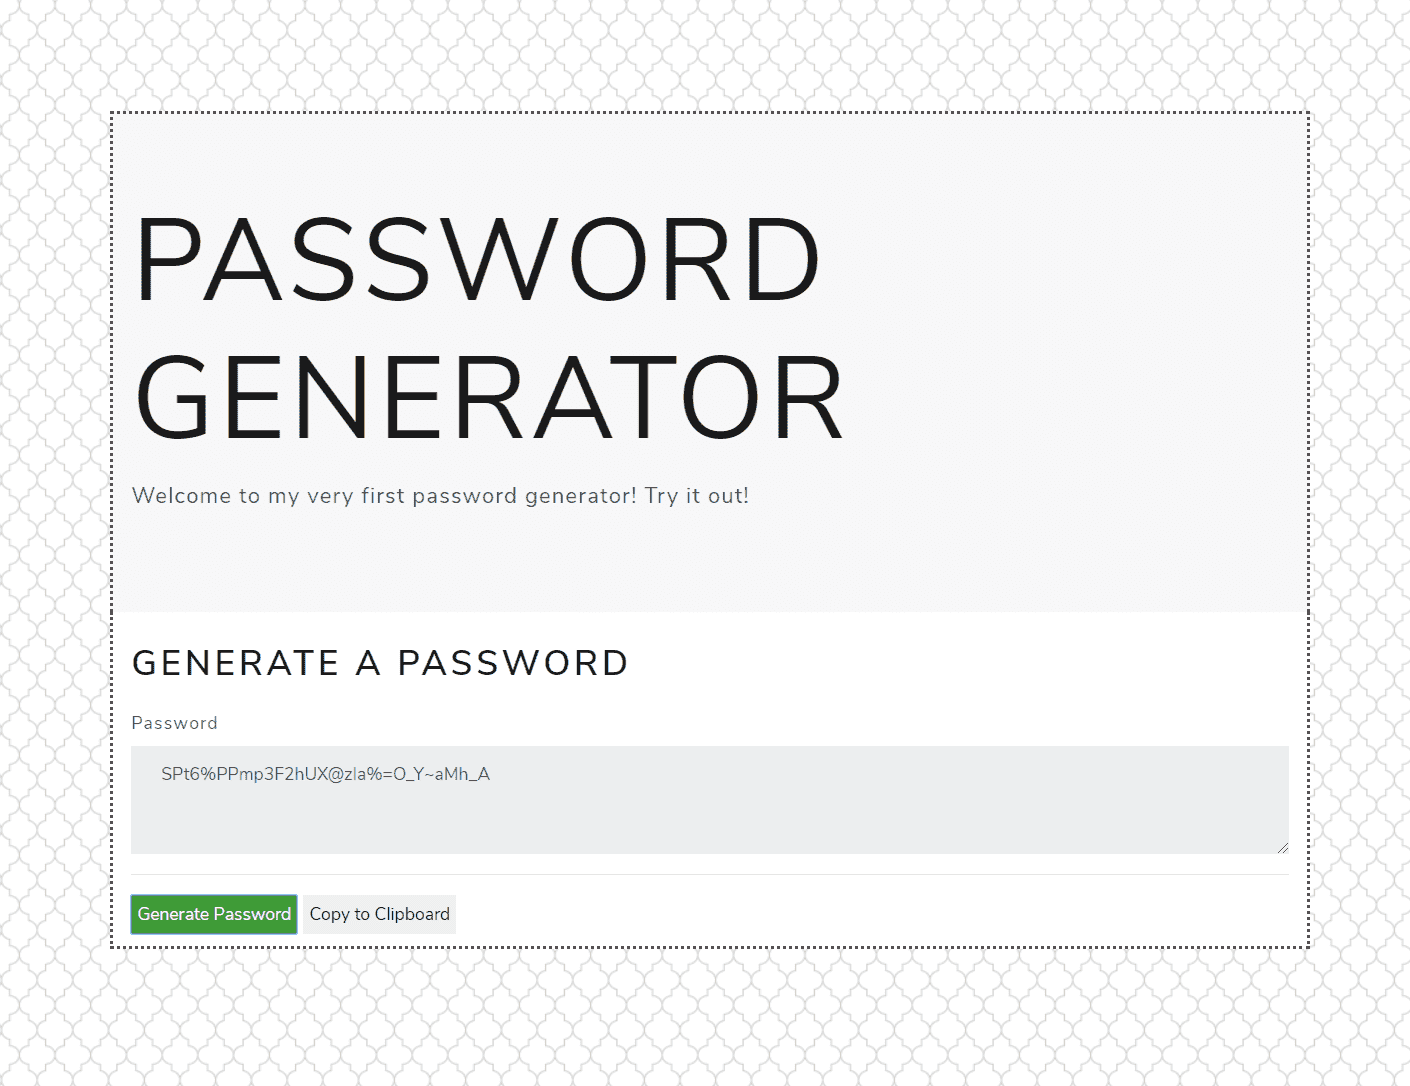 screenshot of password generator website